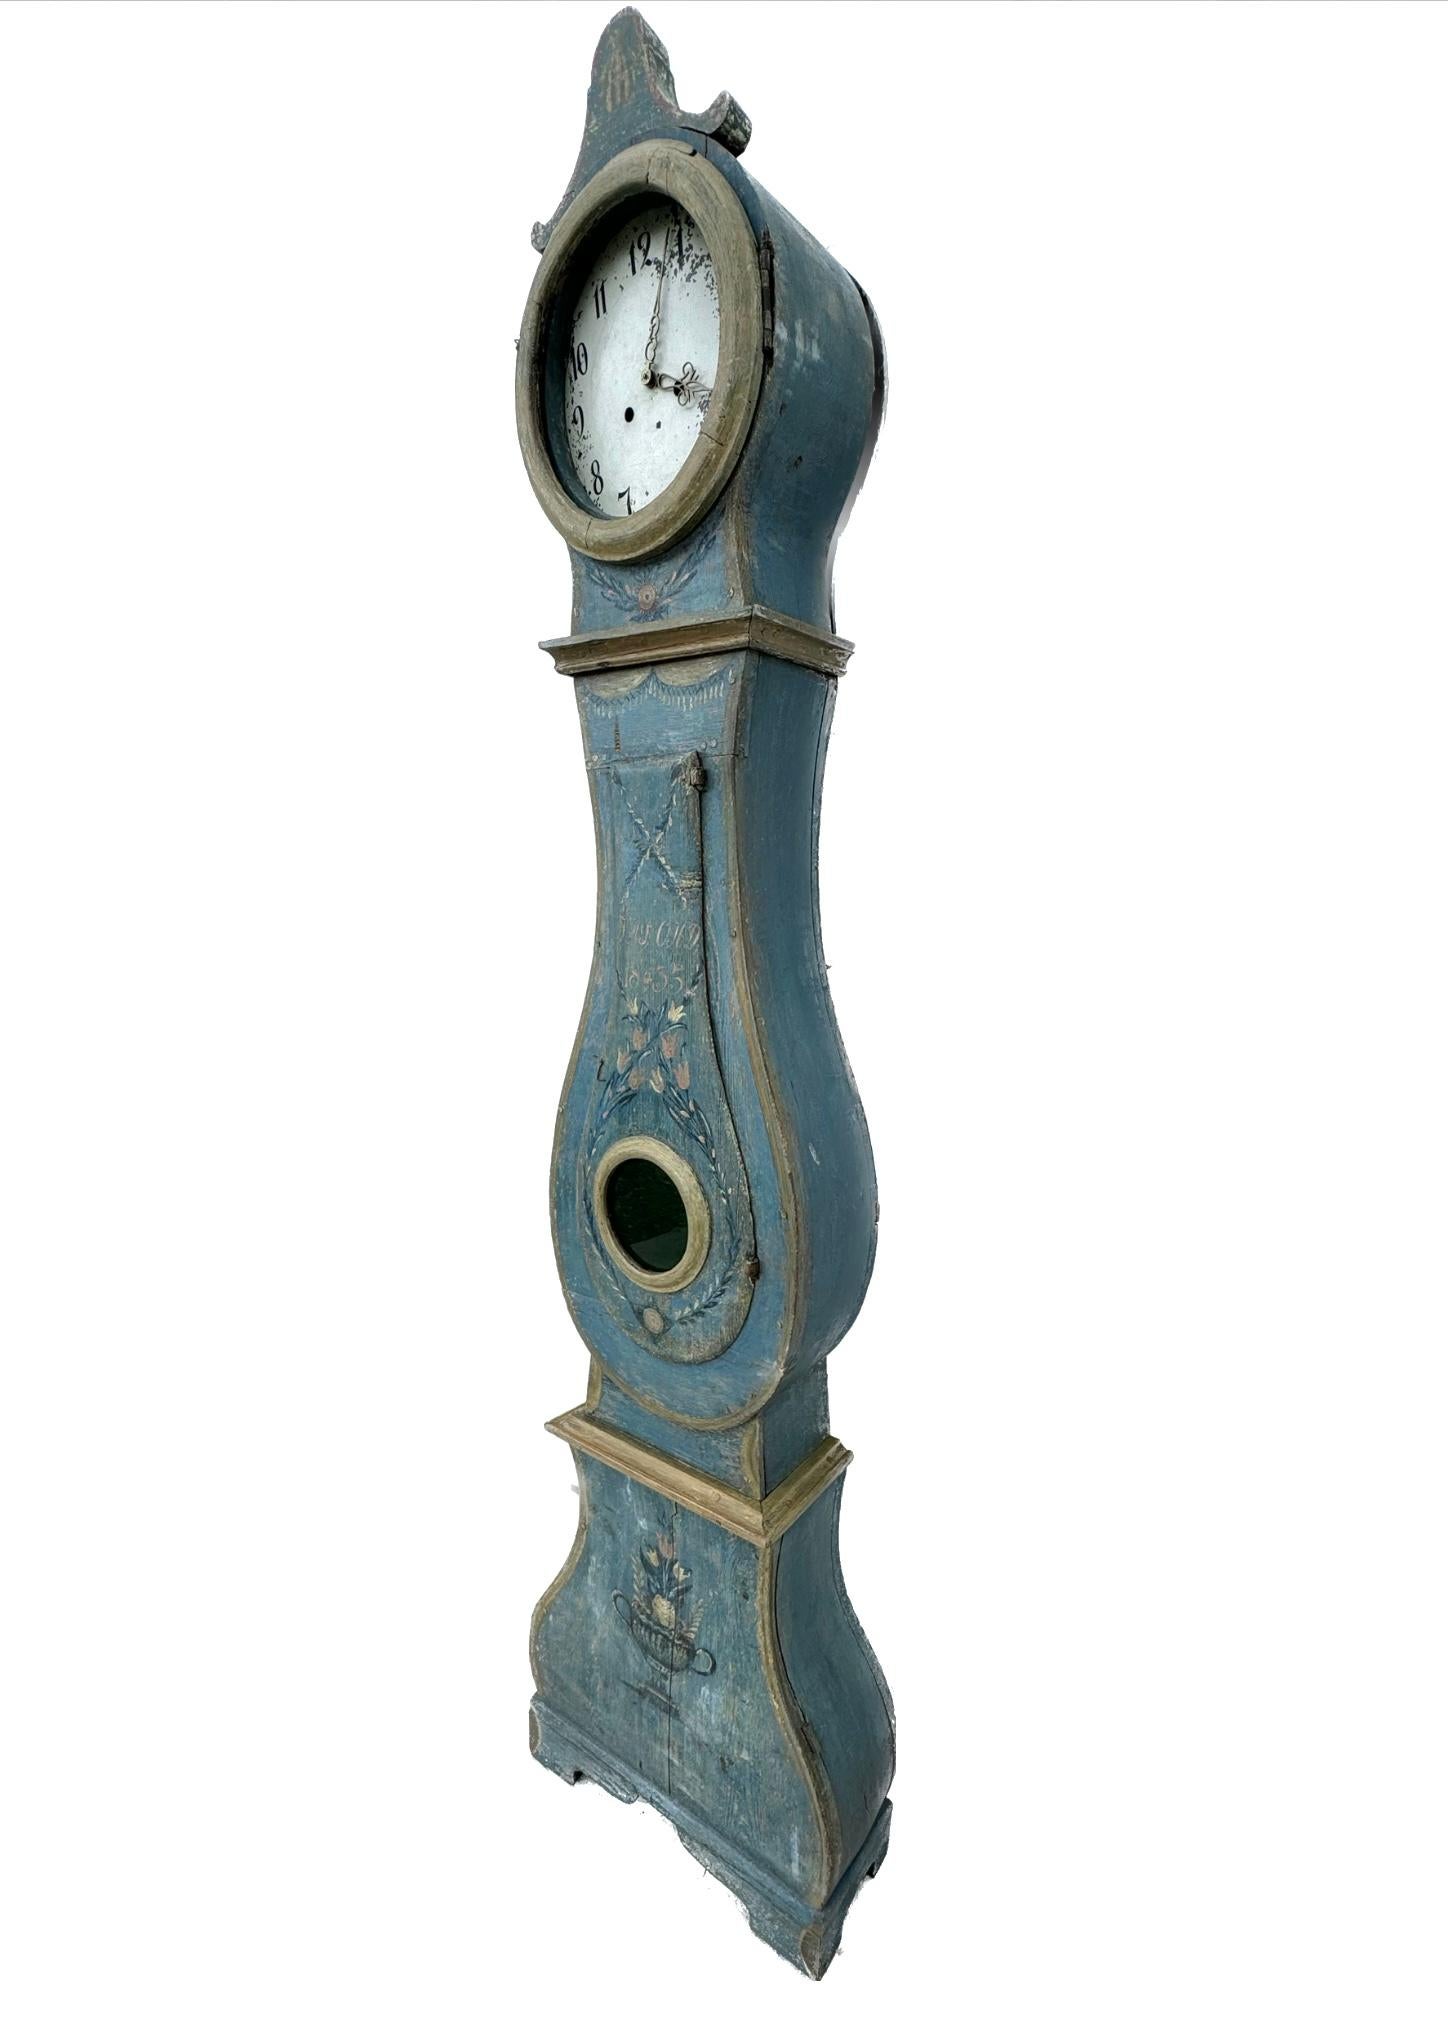 Horloge peinte suédoise gustavienne à long boîtier du XIXe siècle, dotée d'une élégante et fine caisse en bois avec des détails décoratifs. L'horloge polychrome peinte à la main est peinte en bleu ciel avec des motifs floraux sur toute la façade. Le